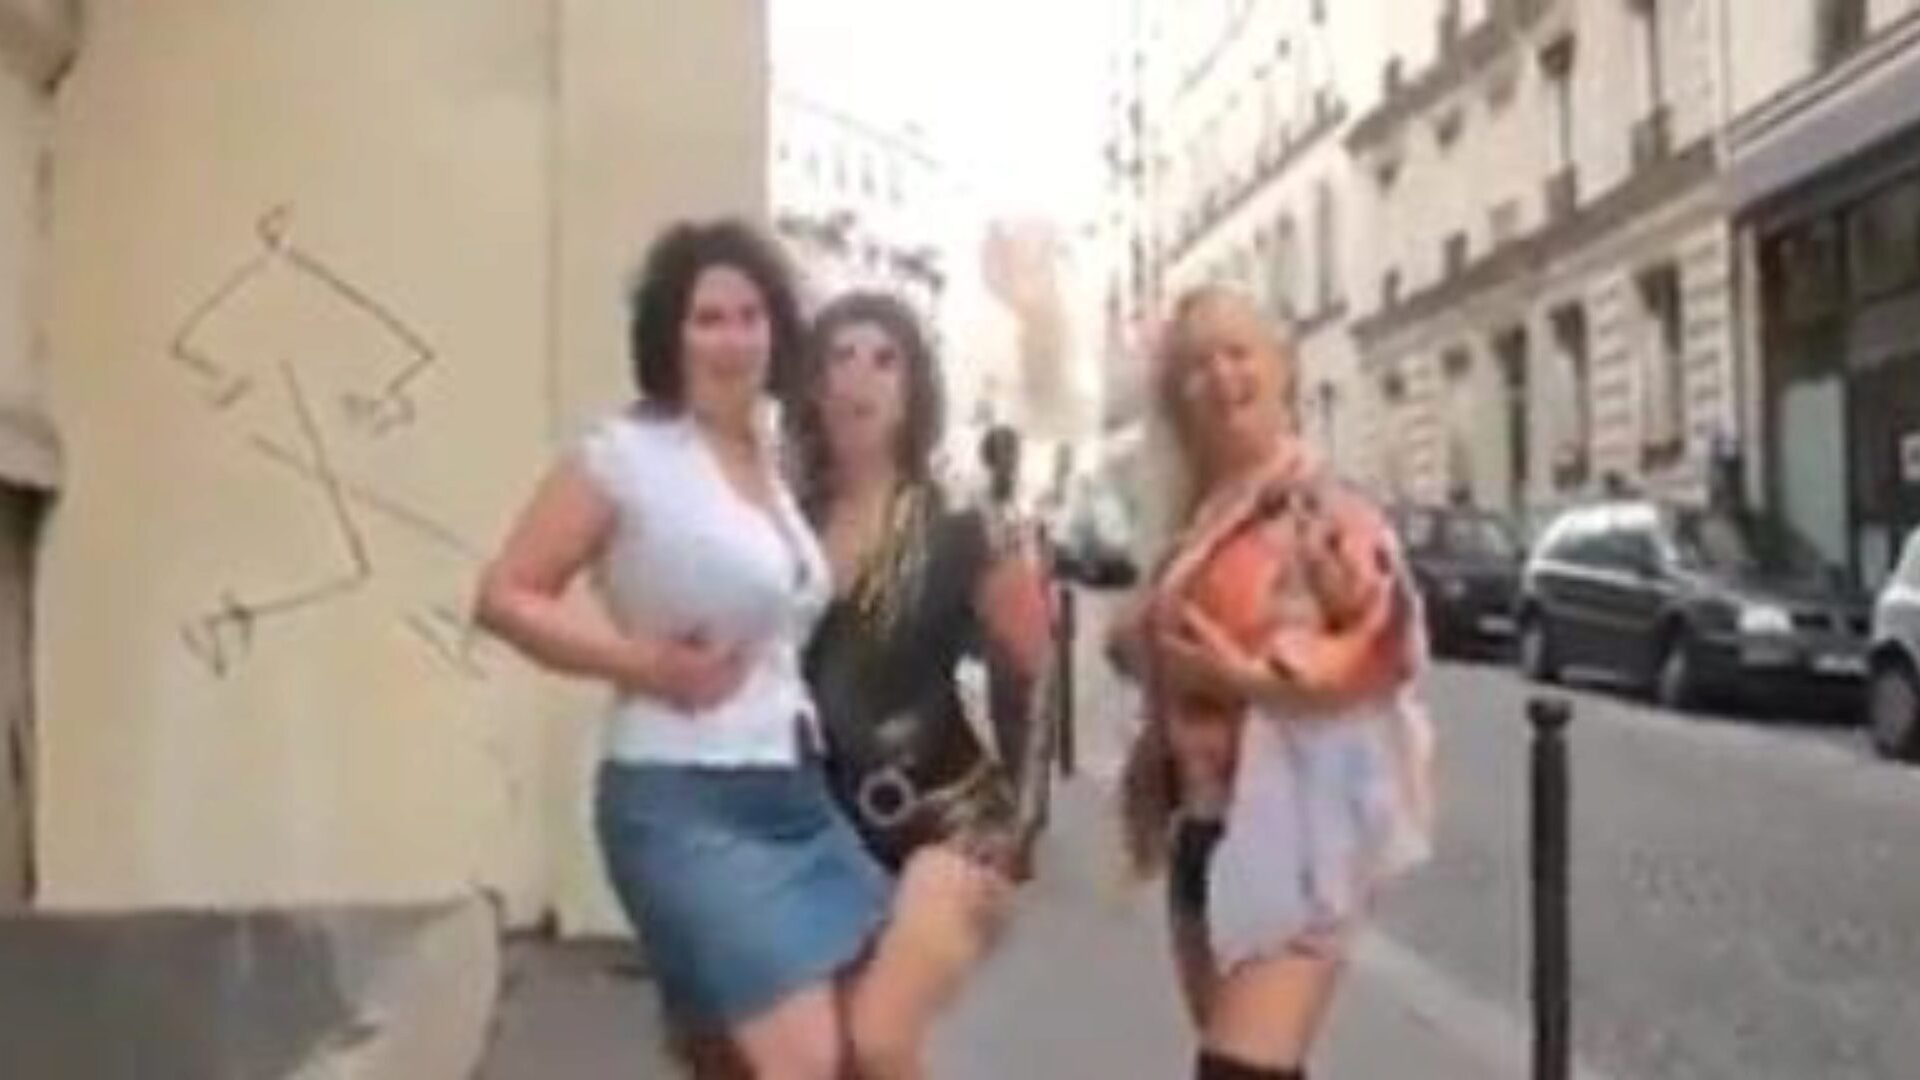 trio maduro: vídeo pornô de dvd maduro gratuito f5 - xhamster assistir clipe de sexo tubo maduro trio grátis para todos no xhamster, com a coleção mais sexy de dvd maduro francês, cenas de clipes anal e móveis de pornografia madura